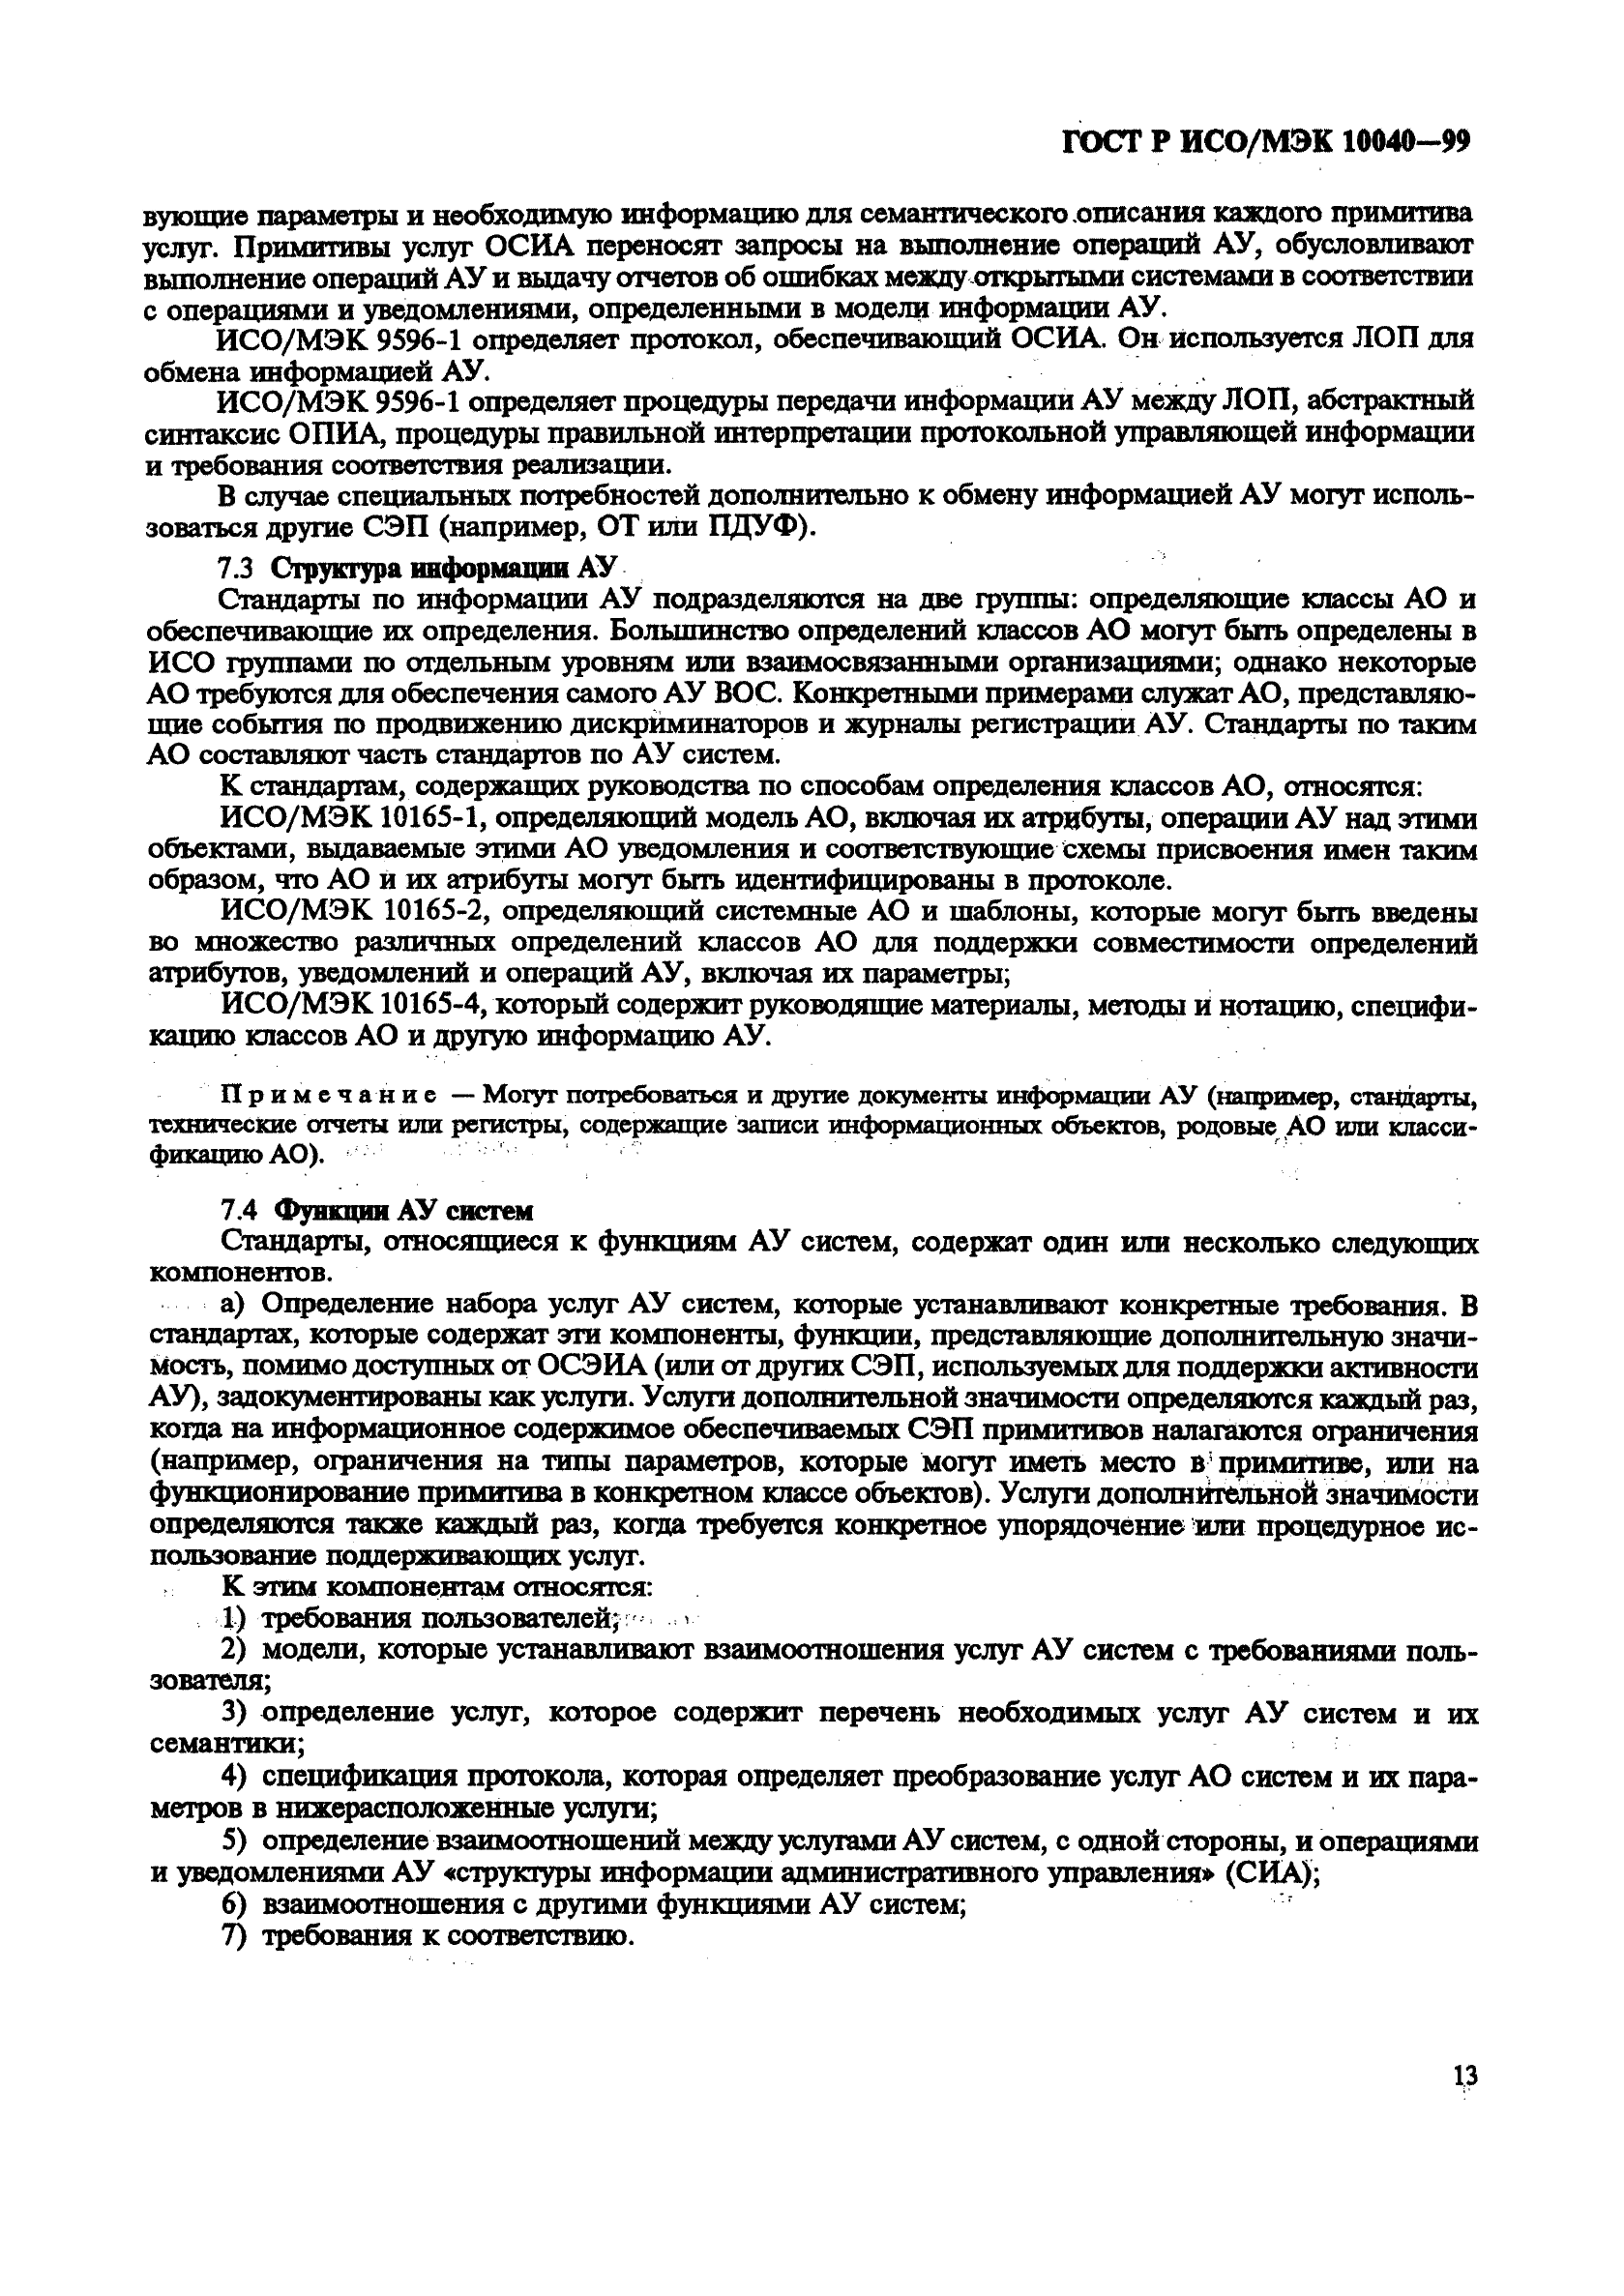 ГОСТ Р ИСО/МЭК 10040-99